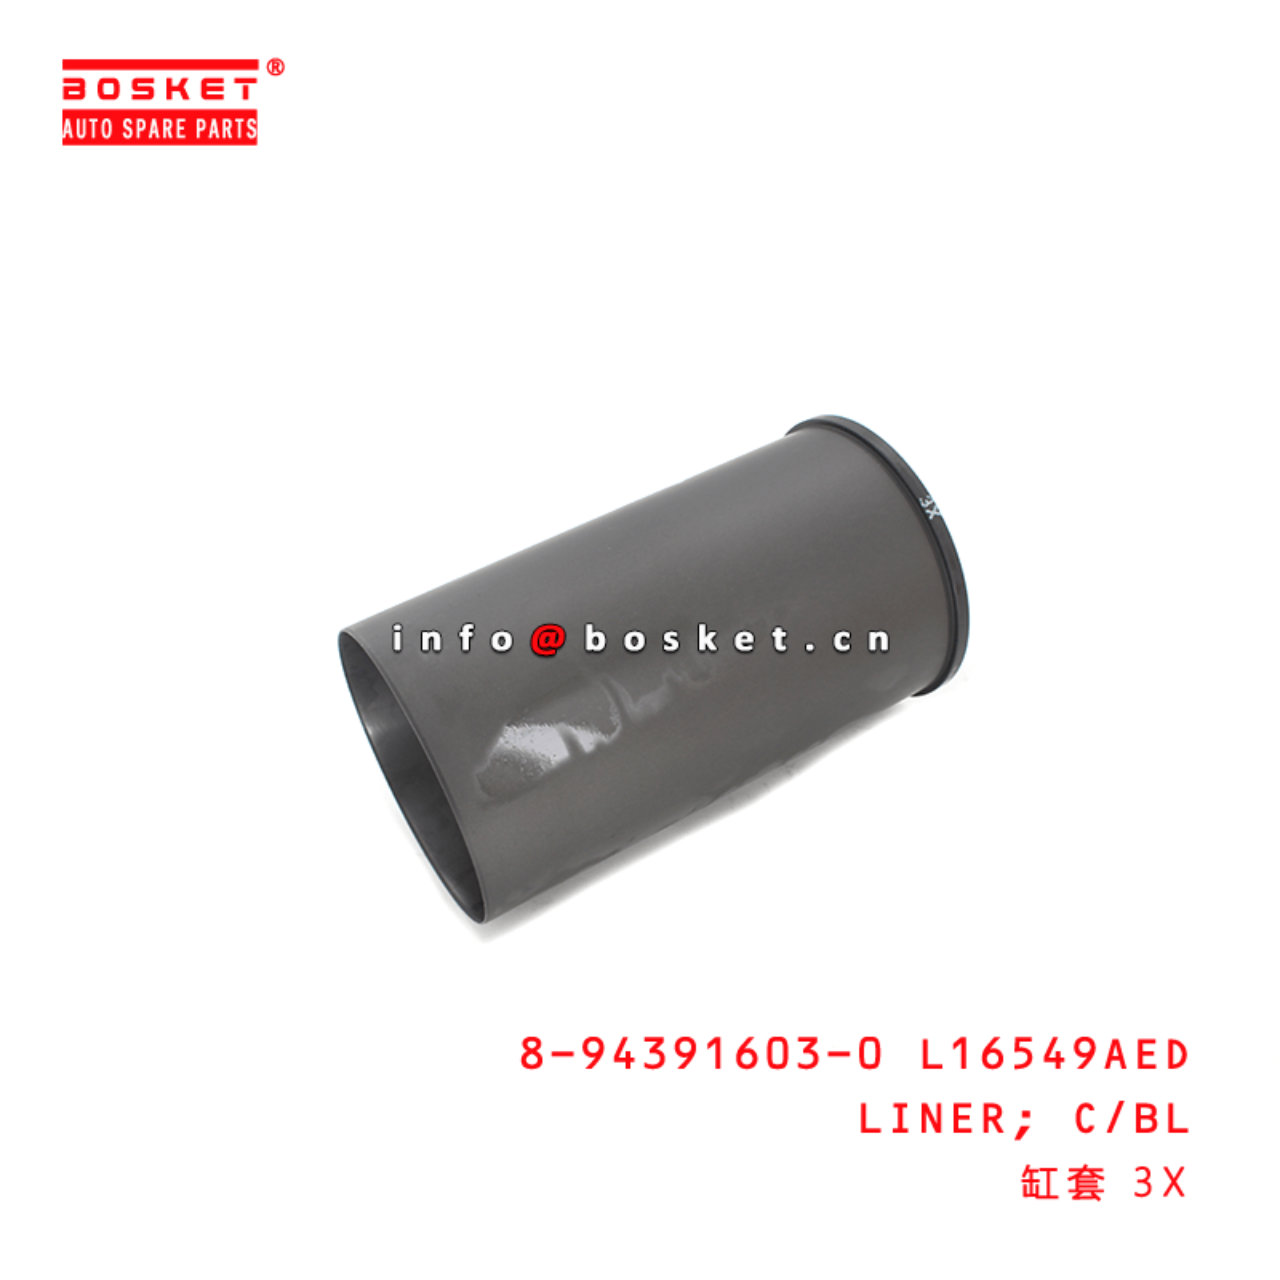 8-94391603-0 Cylinder Block Liner 8943916030 Suitable for ISUZU FVZ34 6HK1 4HK1